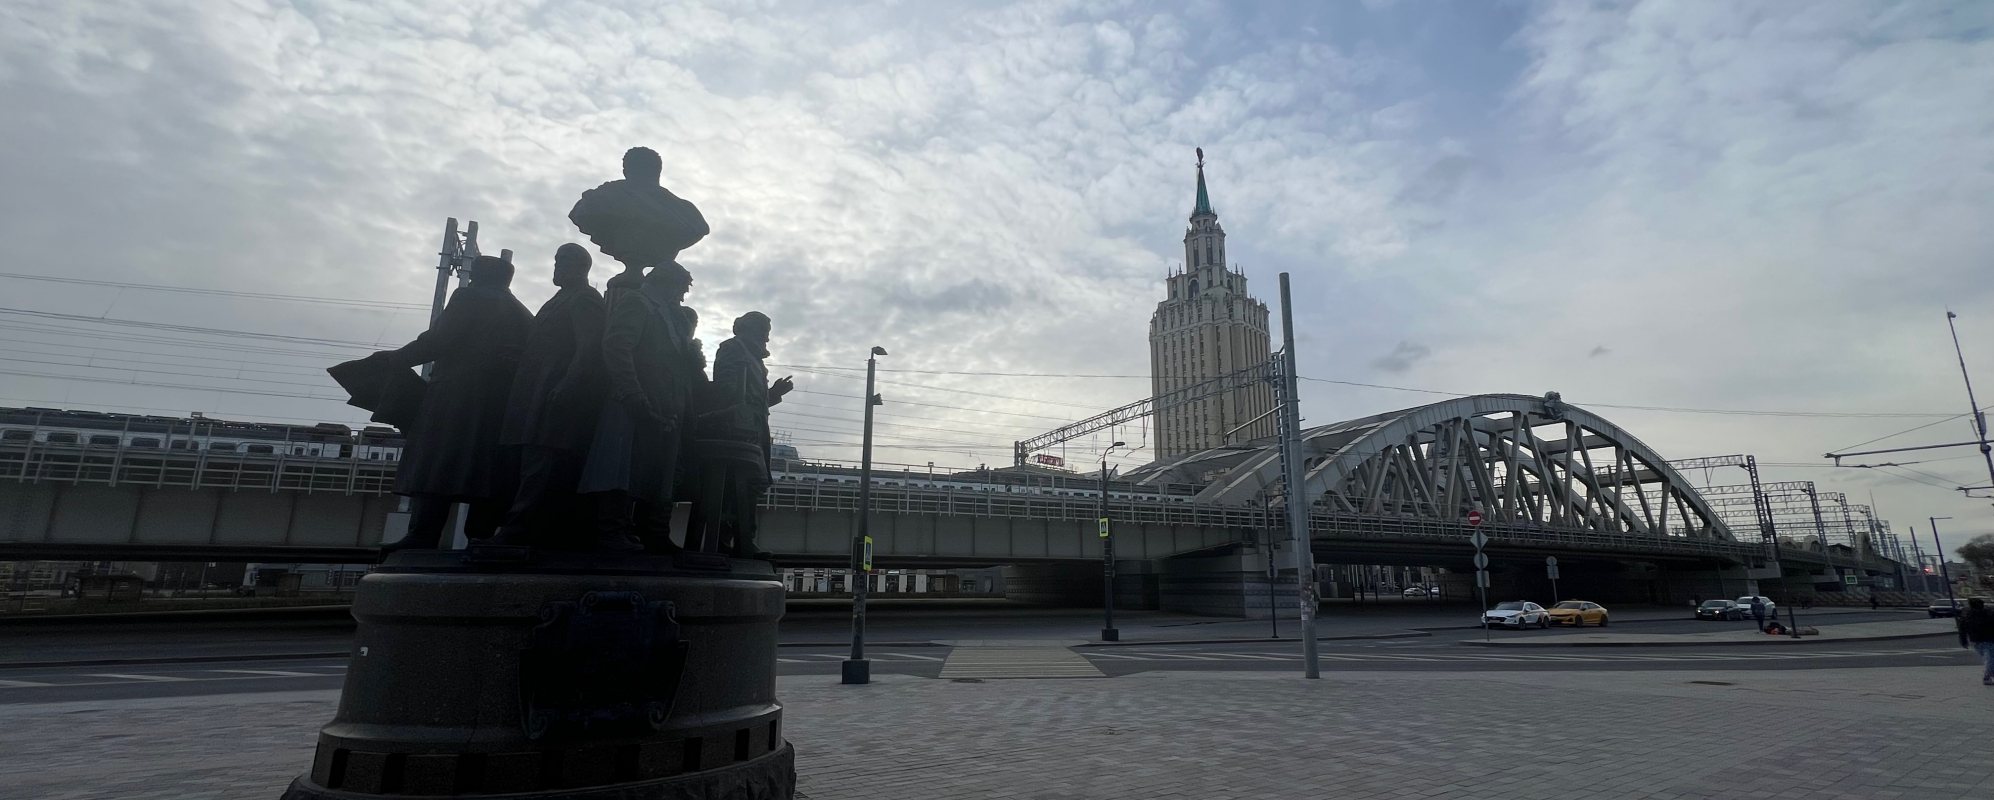 Памятник Создателям железных дорог у Казанского вокзала